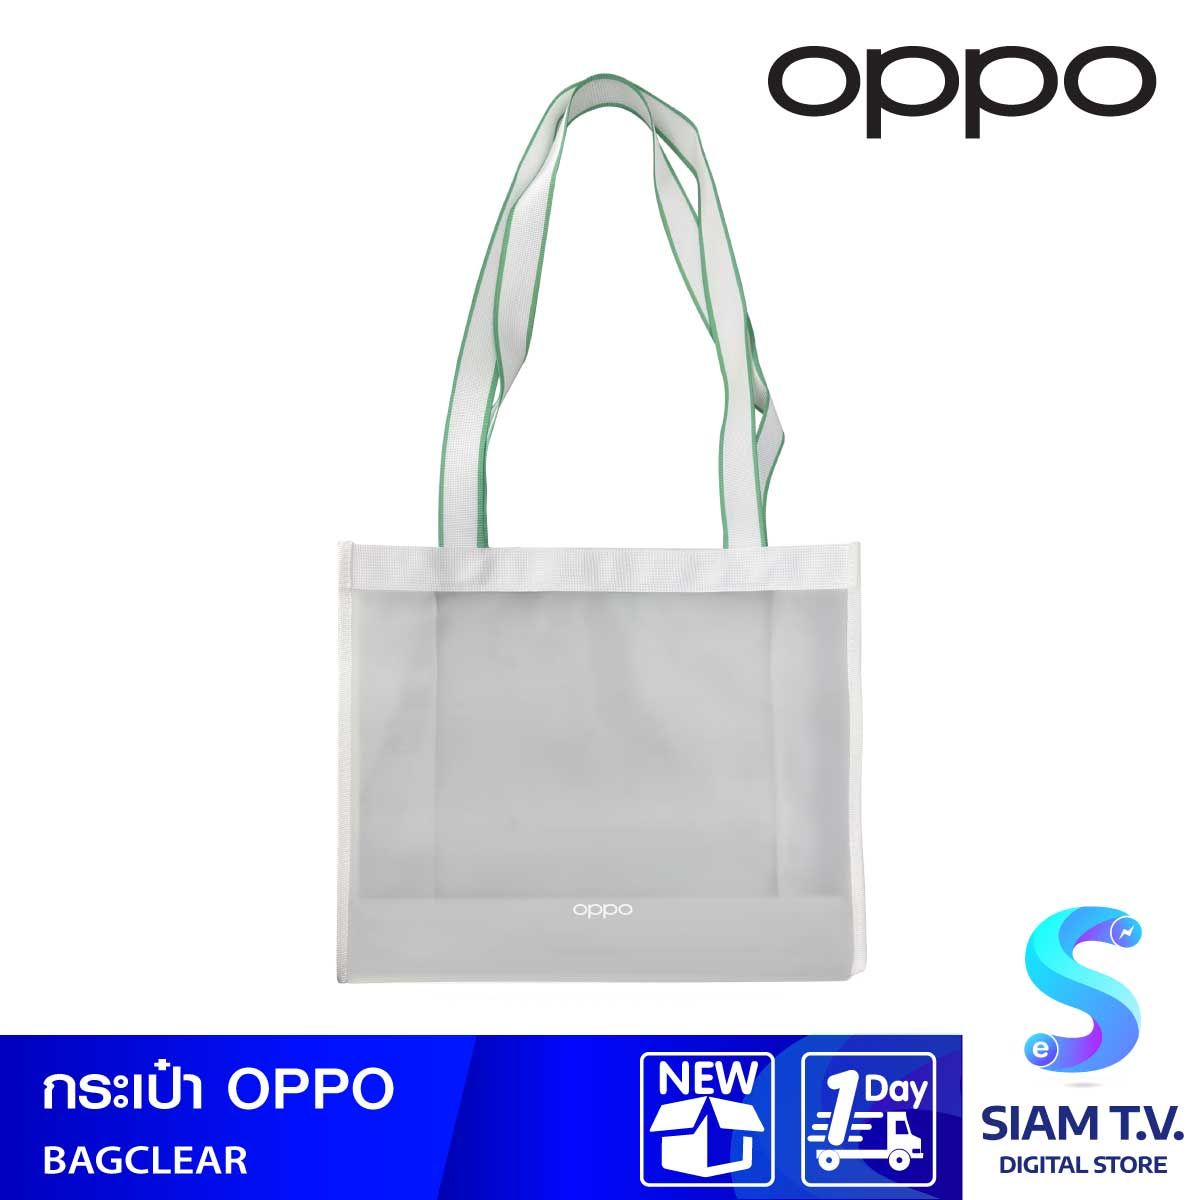 Best Deals for Oppo Handbags | Poshmark